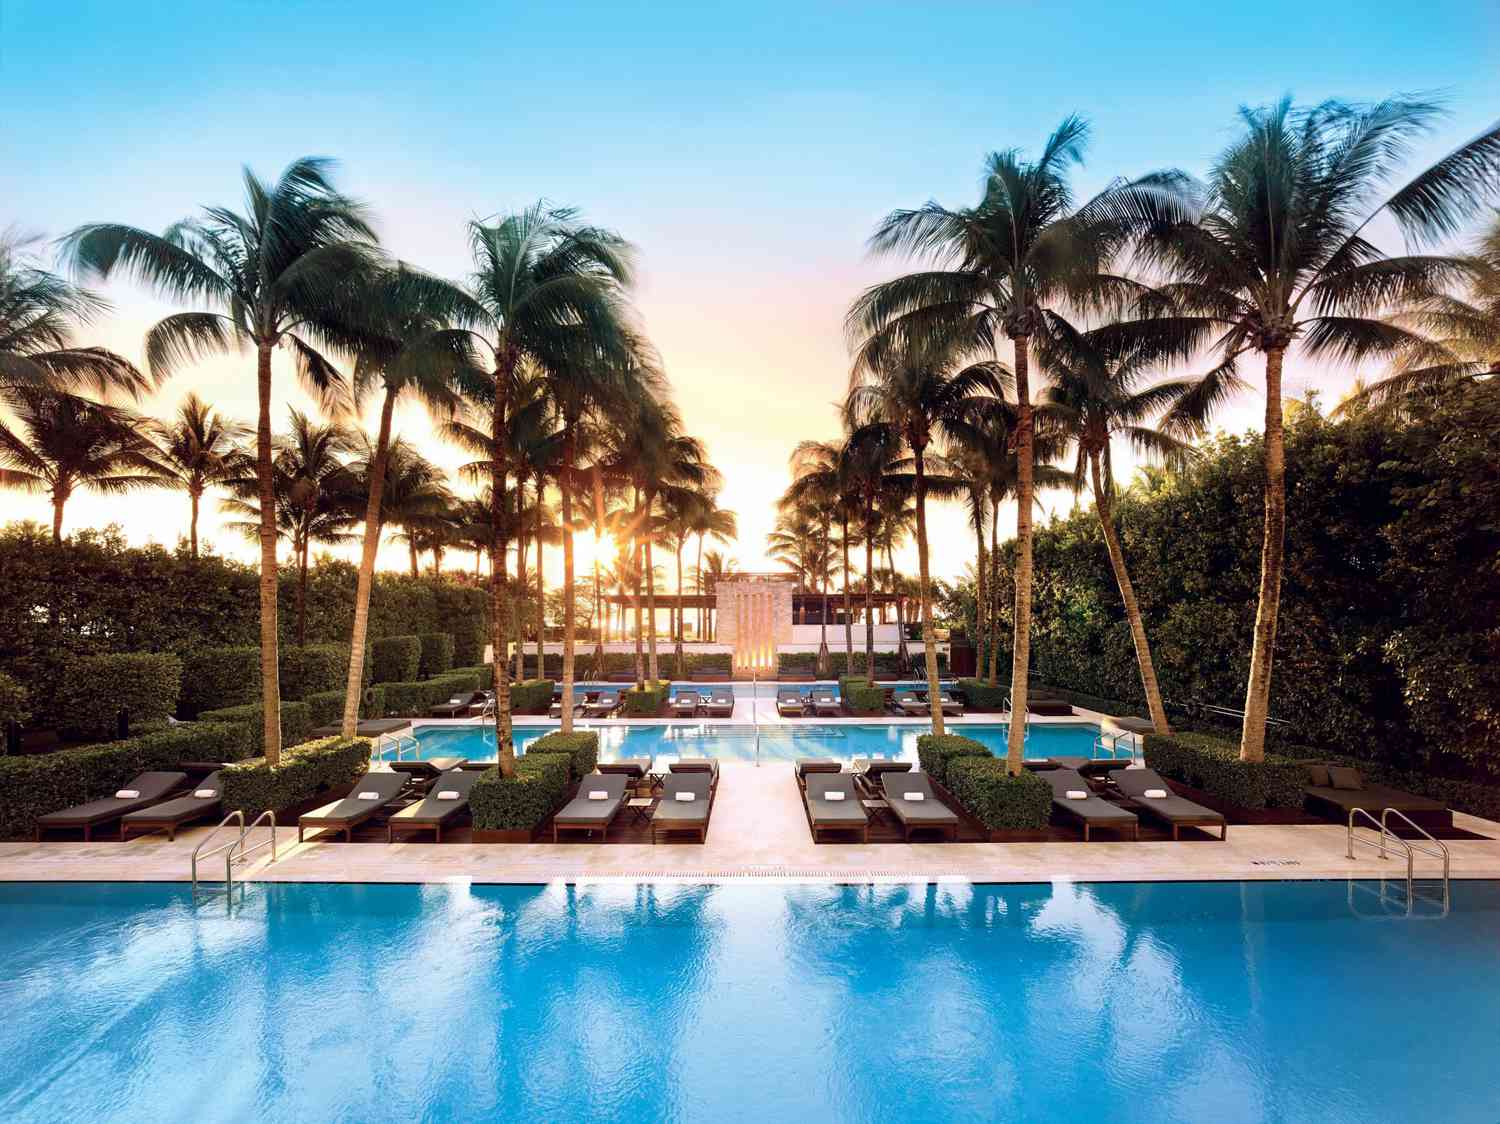 Where to Stay: The Setai Miami Beach